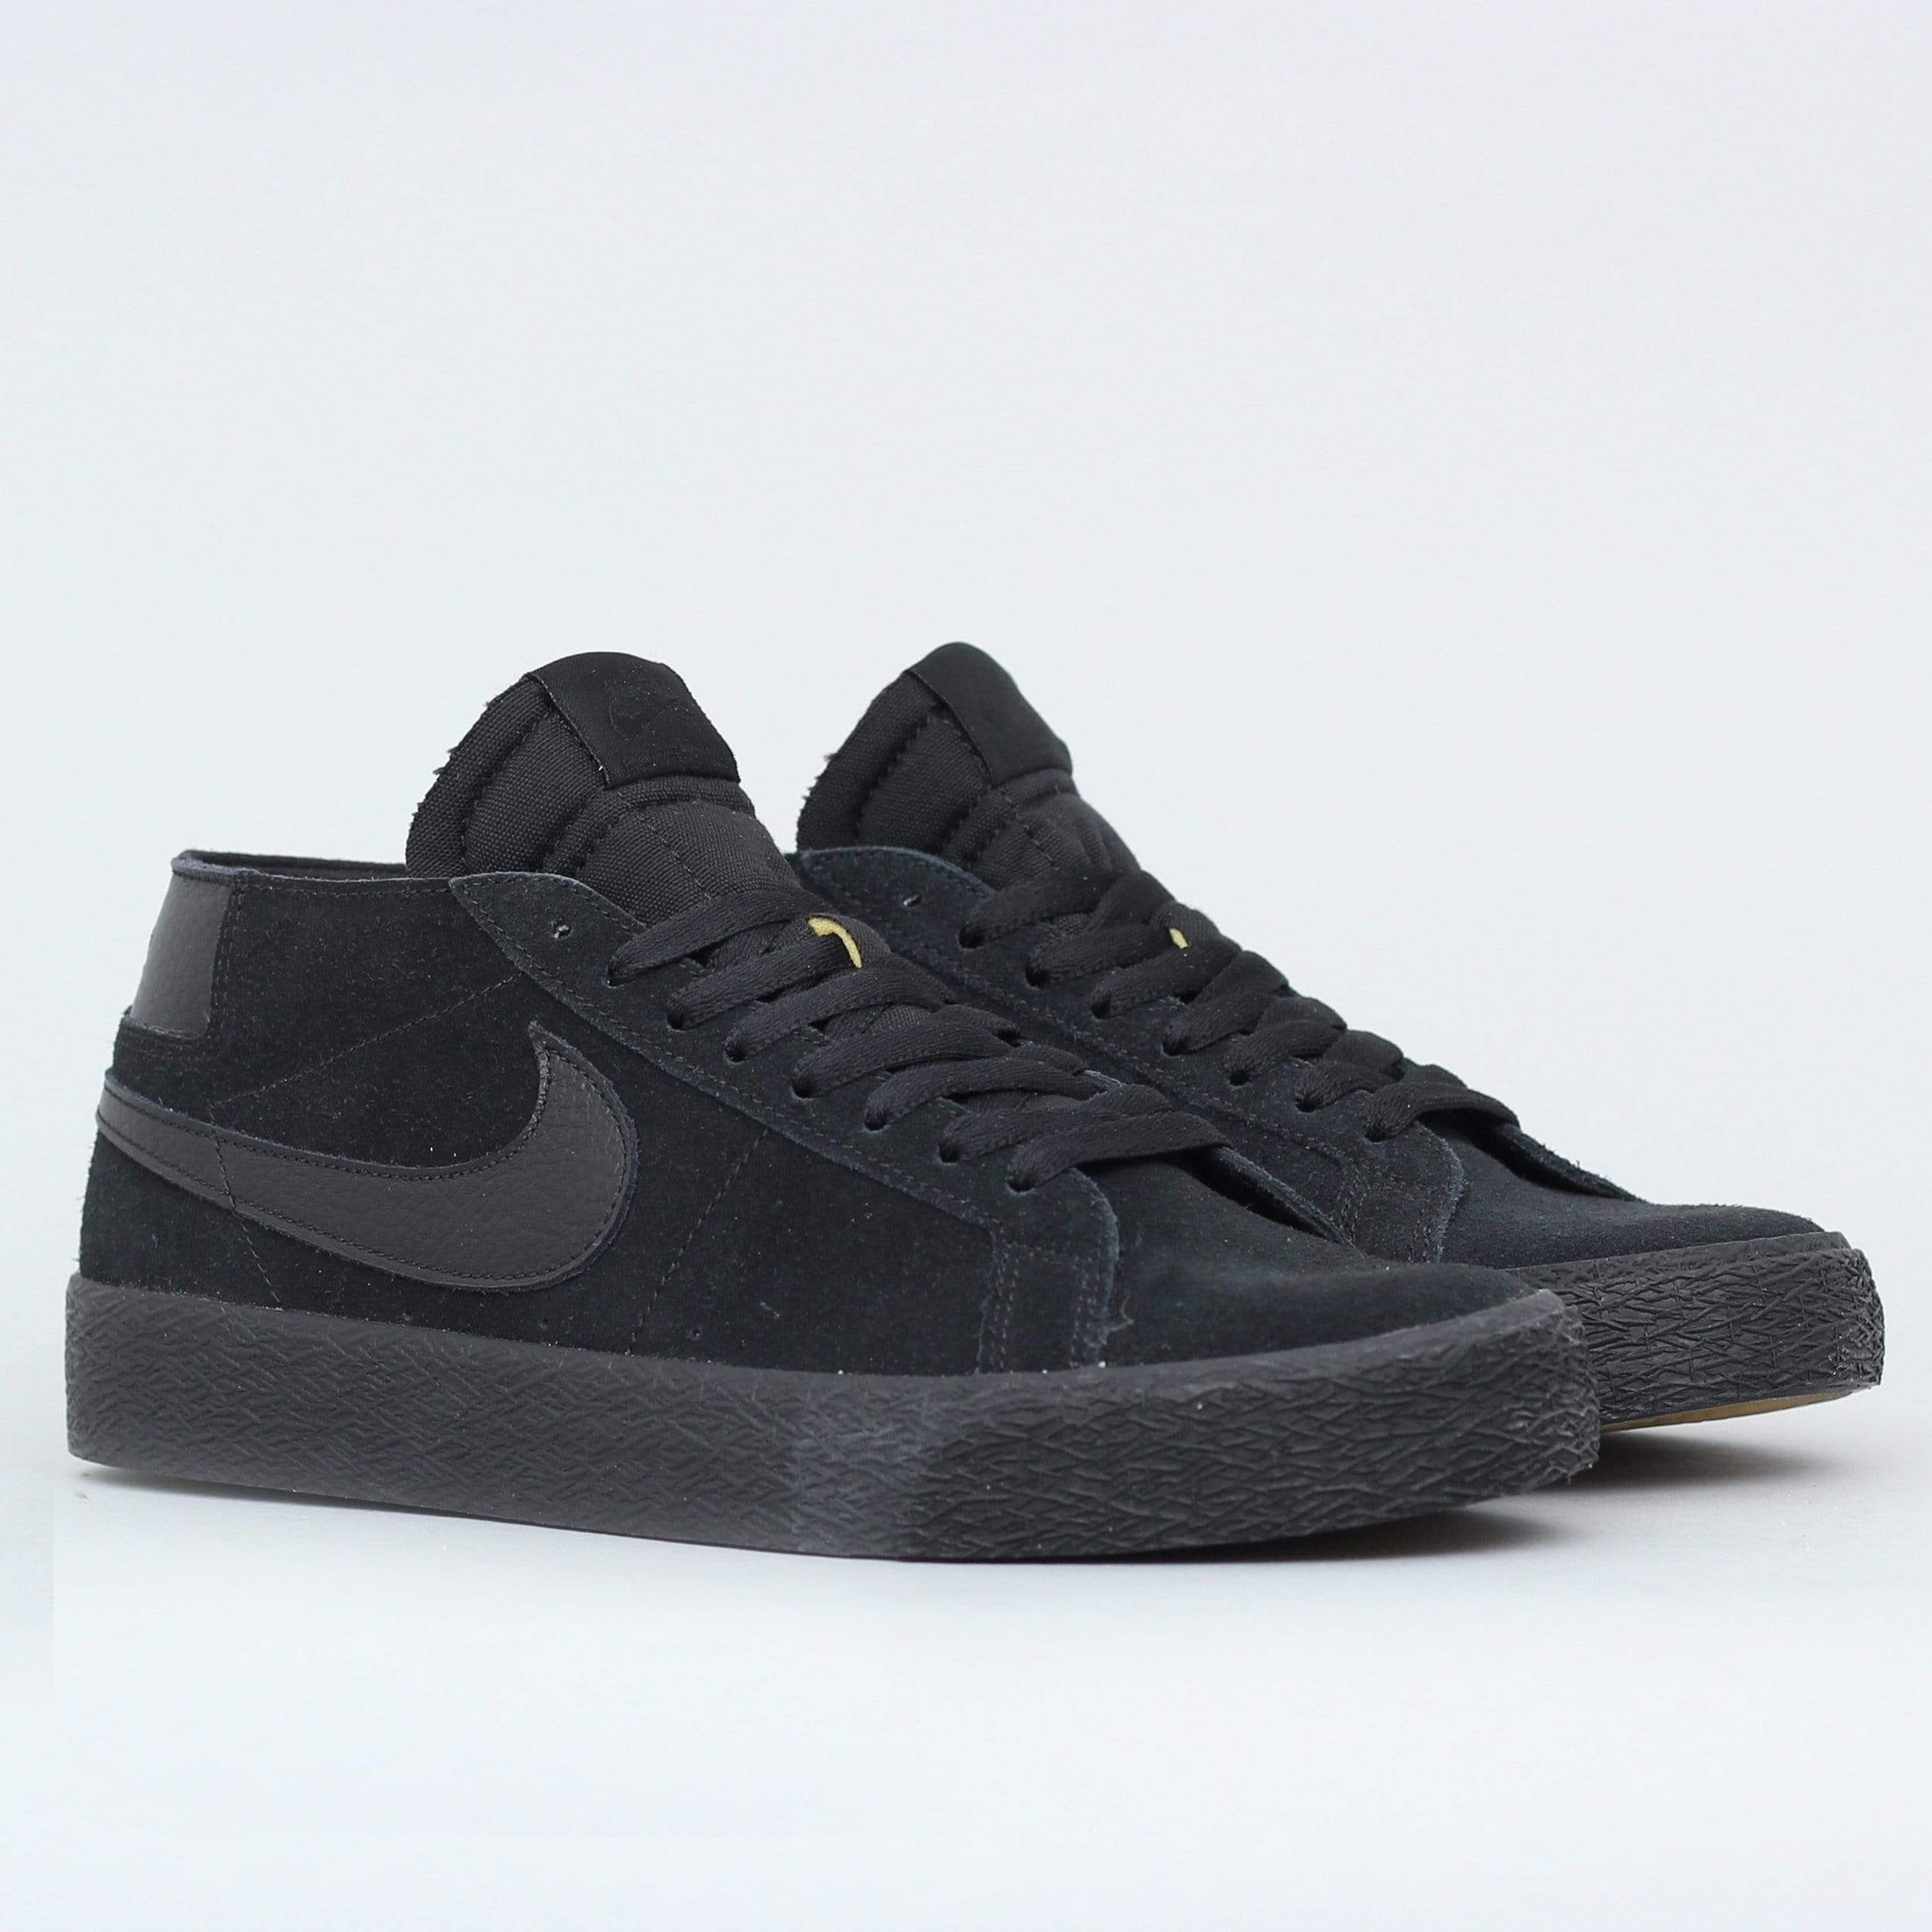 Nike SB Blazer Chukka Shoes Black / Black